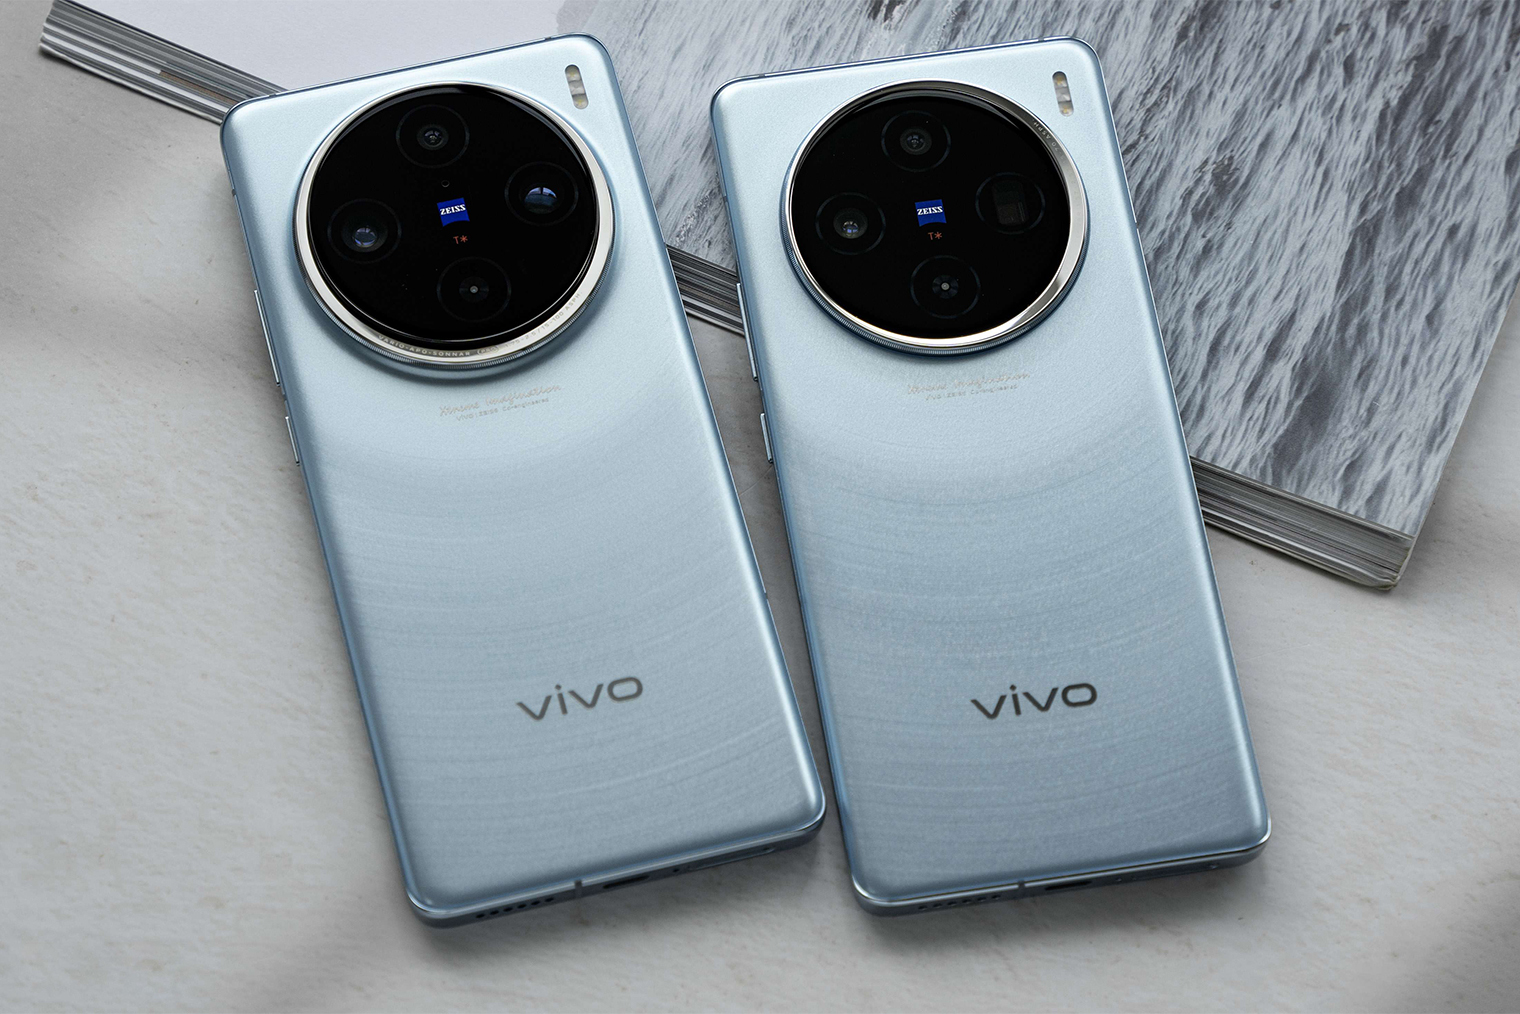 Vivo X100 Pro (слева) и Vivo X100 (справа). Различить их можно по форме одного из объективов и окантовке модуля. У базовой модели утолщение смотрит вправо, а у версии Pro — вниз. Источник: vopmart.com